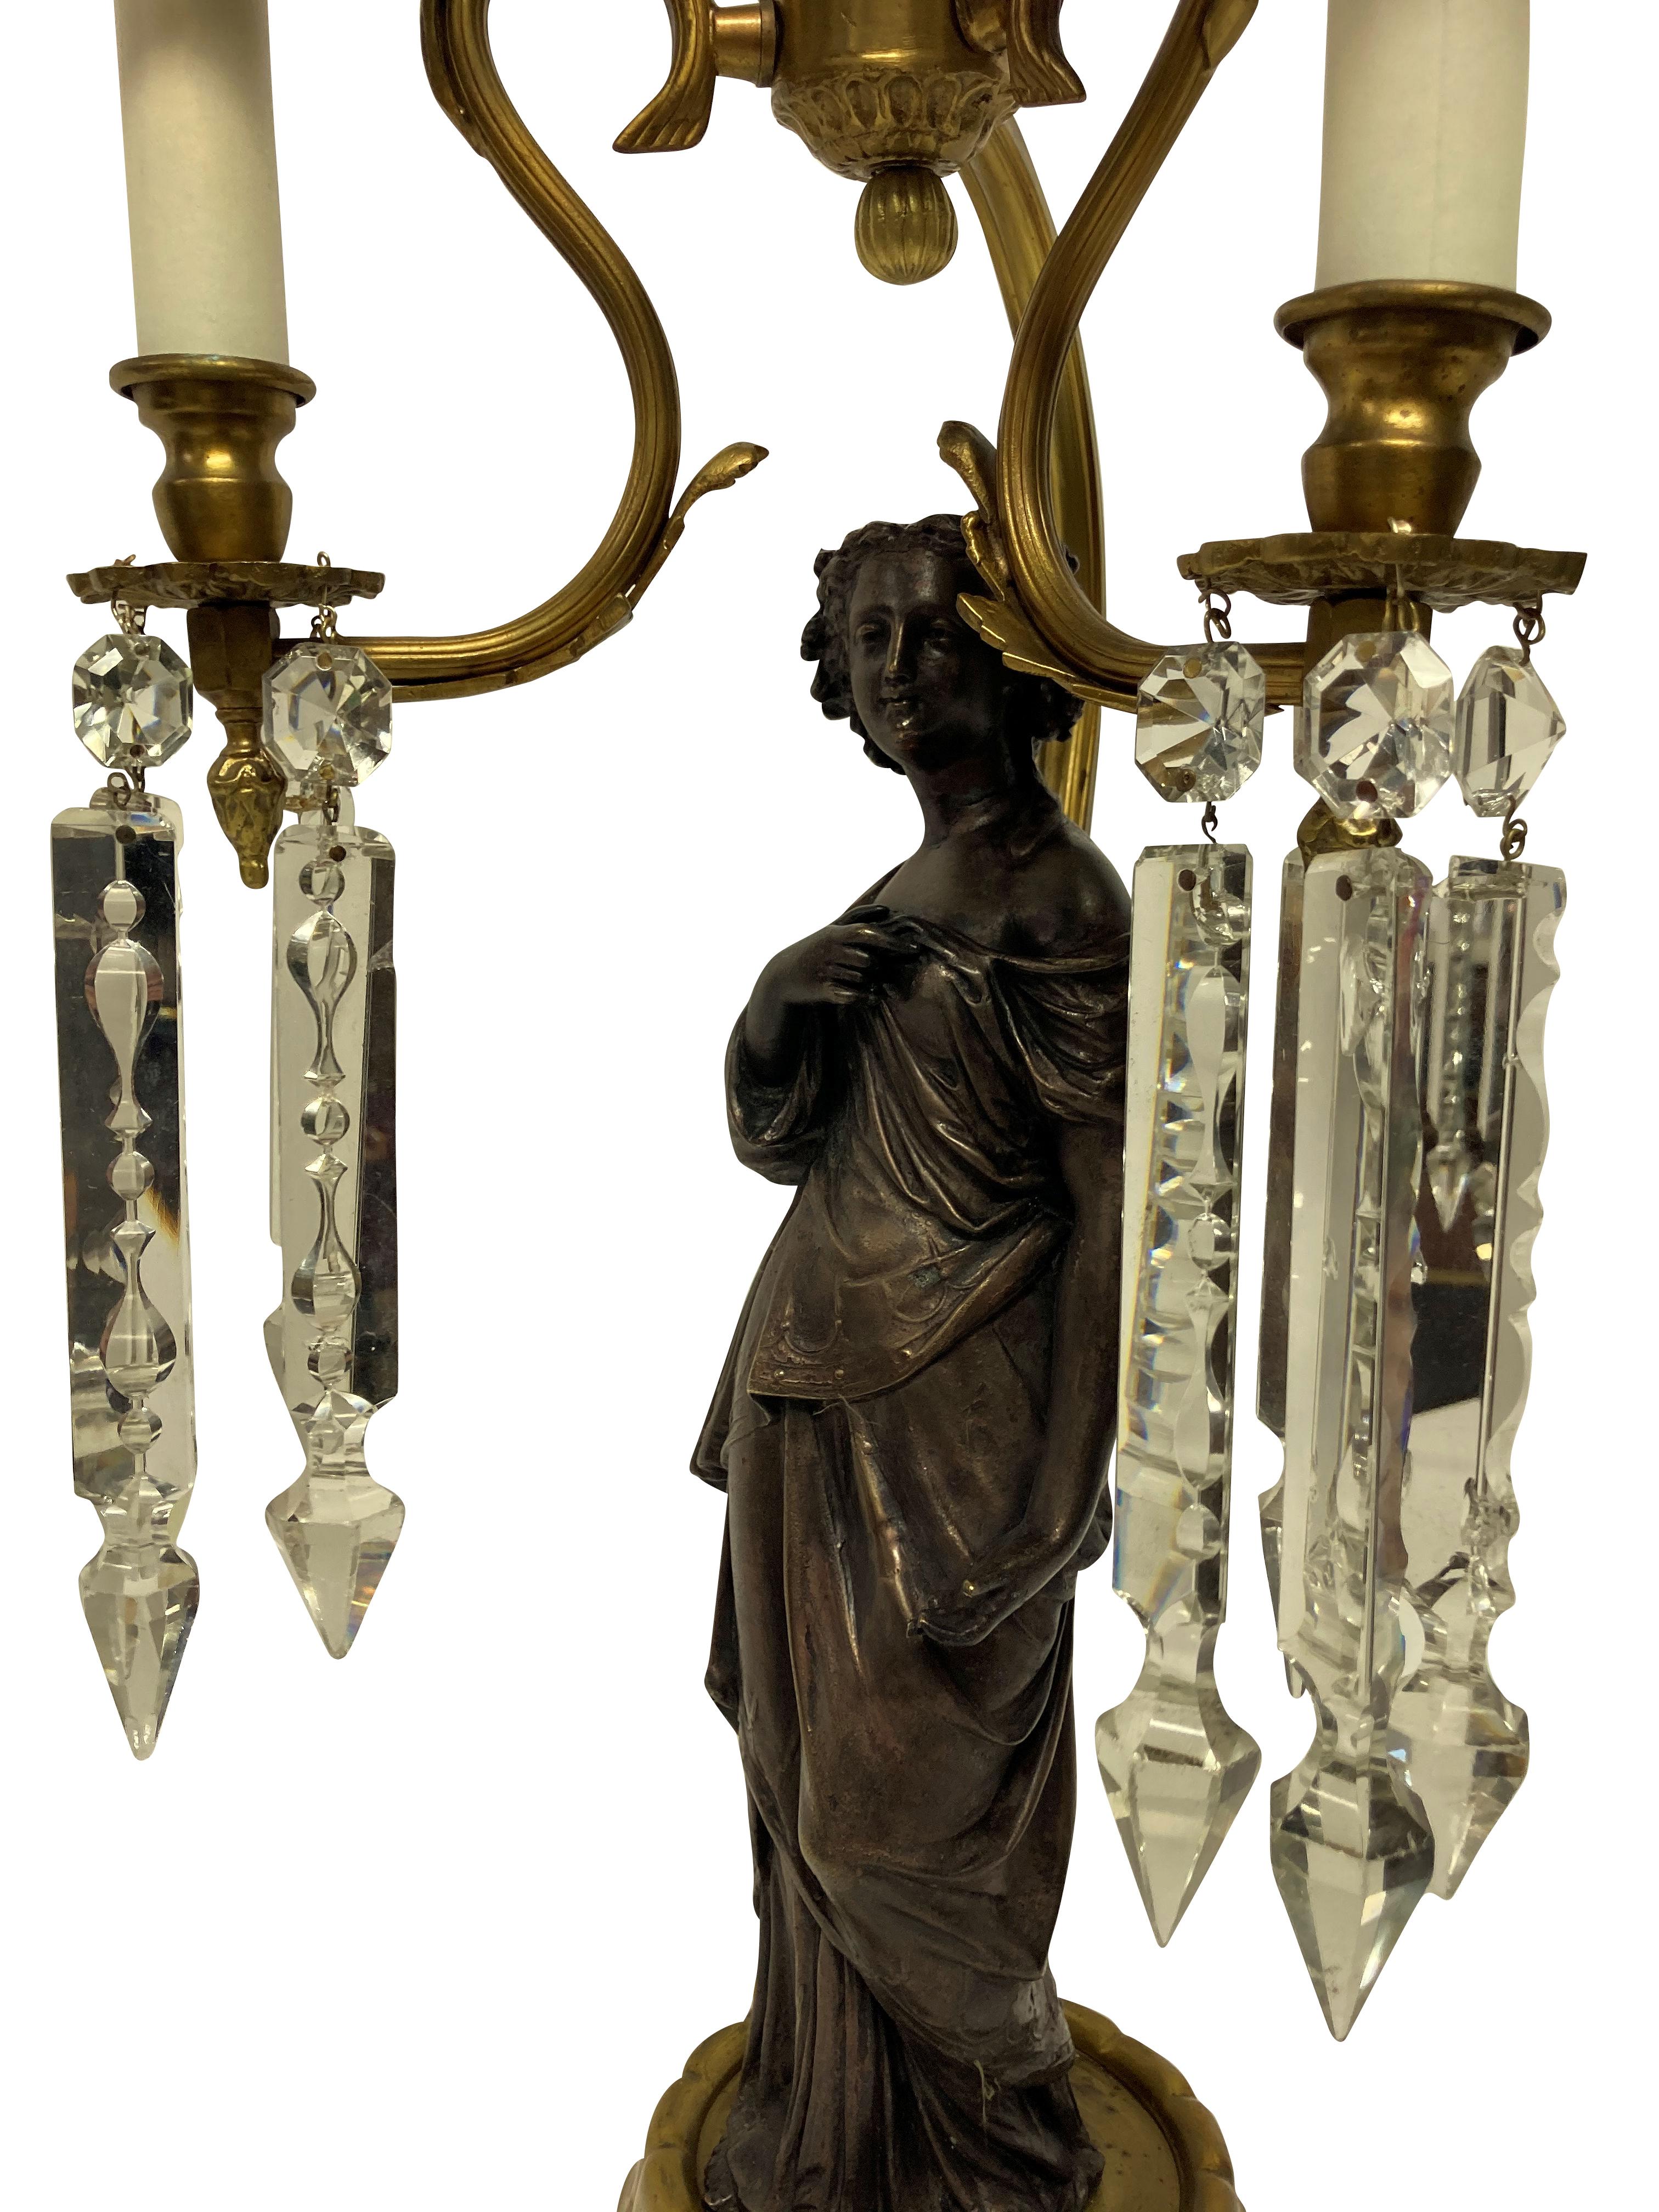 Ein Paar italienischer klassischer figürlicher Lampen, die eine Frau in römischer Kleidung darstellen, jeweils mit geschliffenen Glasanhängern und blassblauen Seidenschirmen.